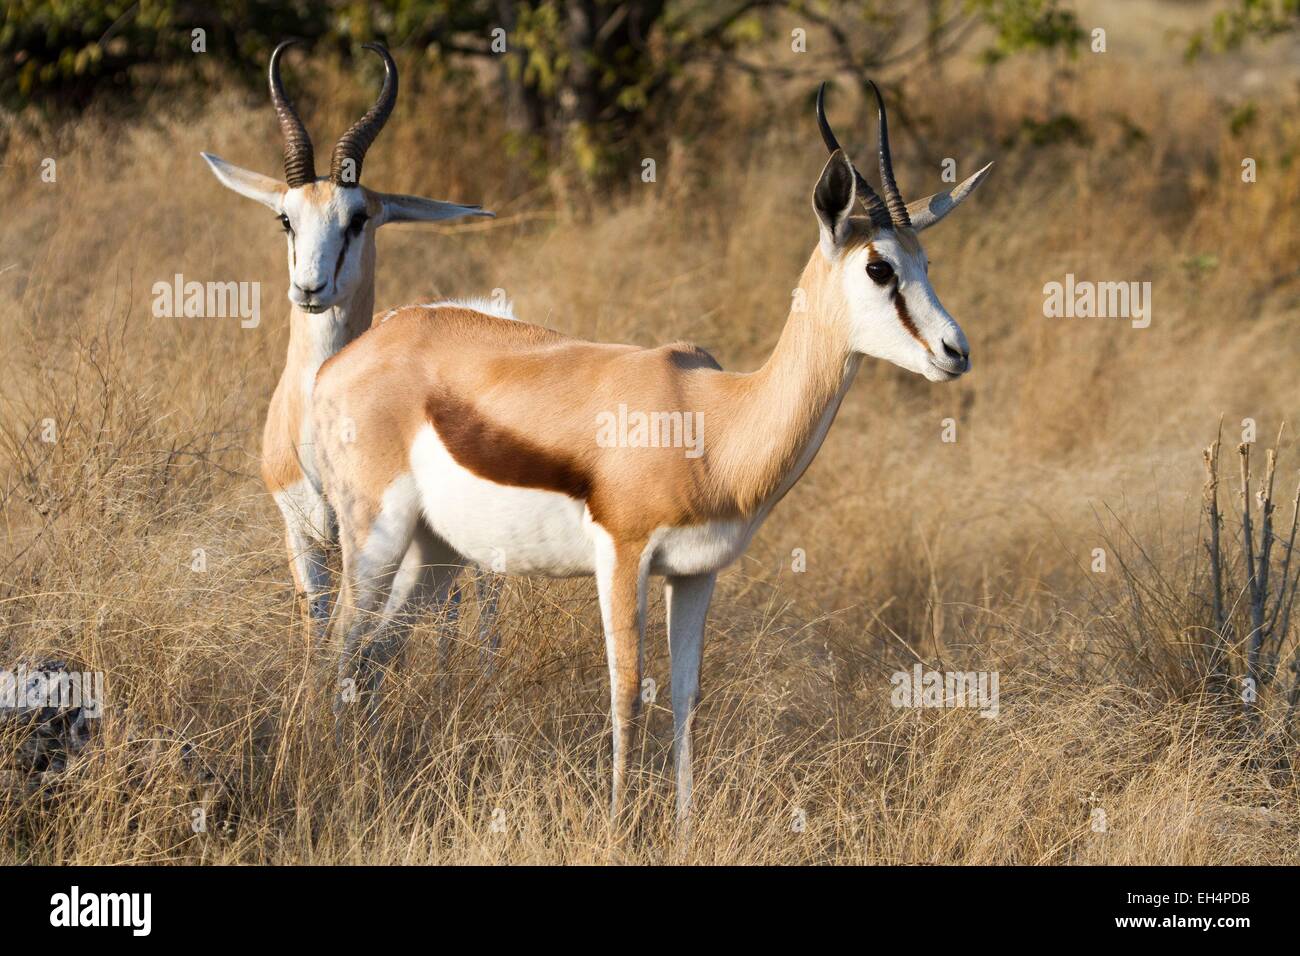 La Namibie, région Oshikoto, Etosha National Park, springboks (Antidorcas marsupialis) Banque D'Images